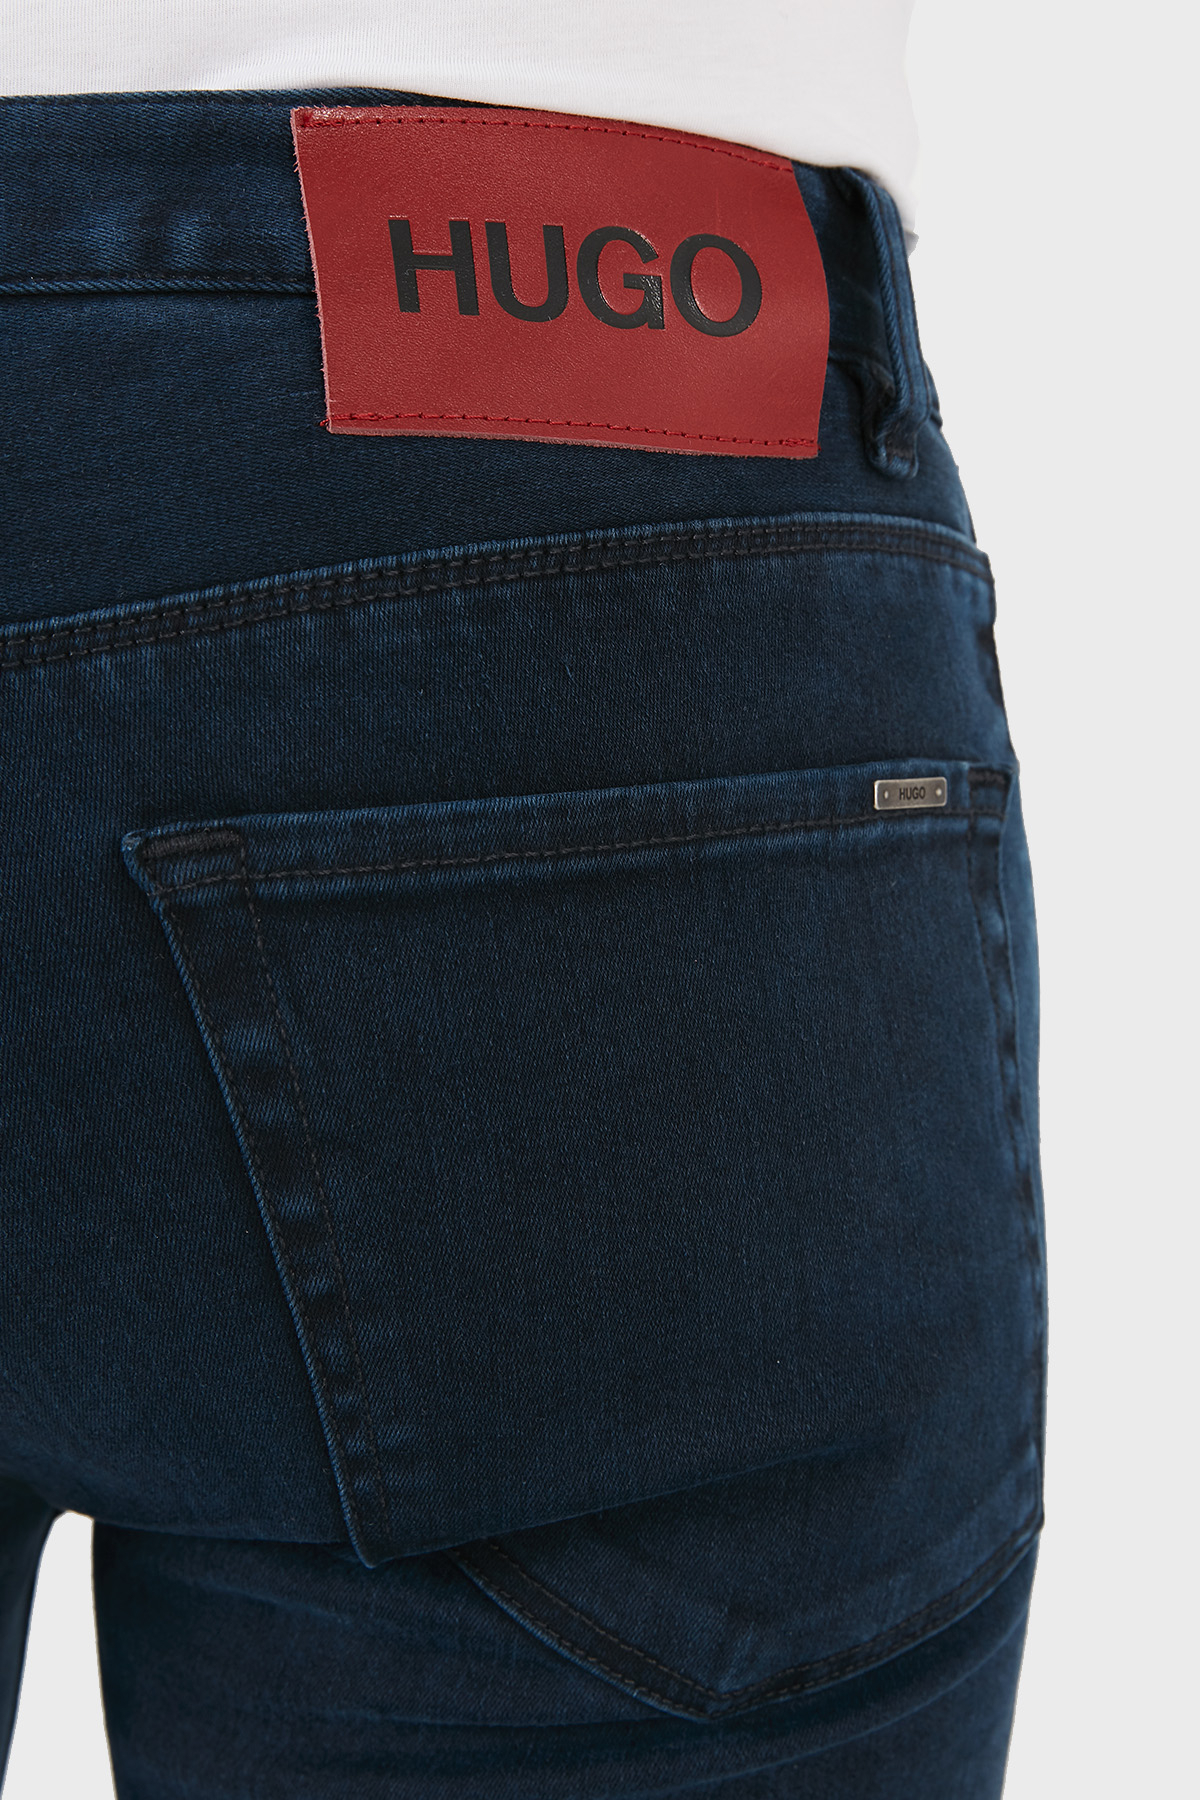 Hugo Boss Slim Fit Cepli Pamuklu Jeans Erkek Kot Pantolon 50459799 410 LACİVERT